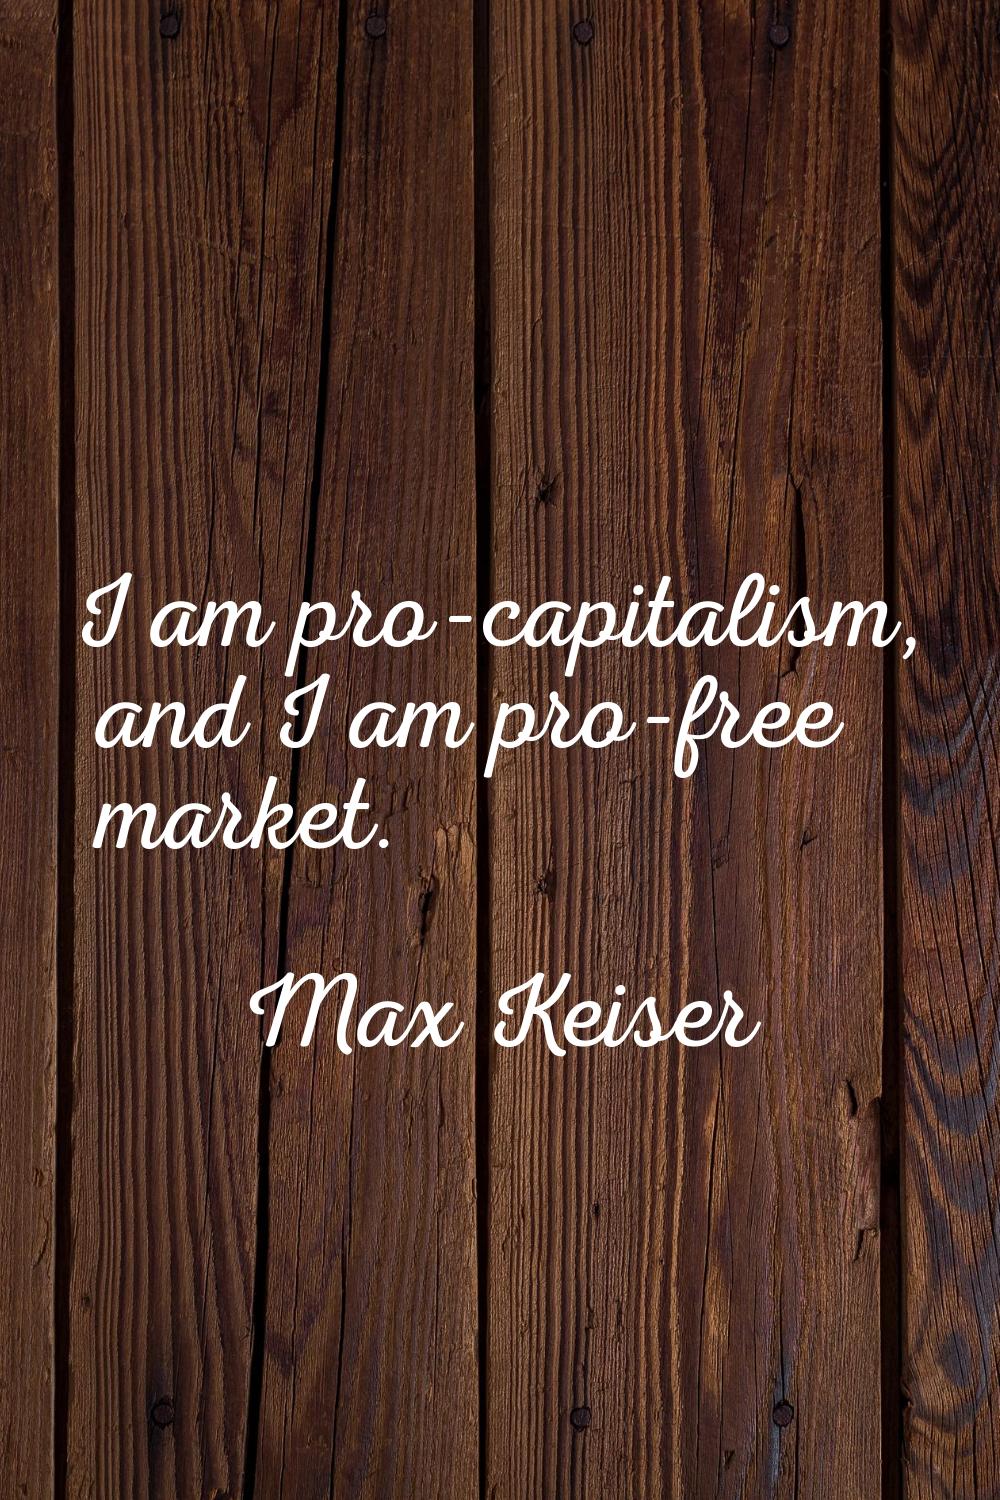 I am pro-capitalism, and I am pro-free market.